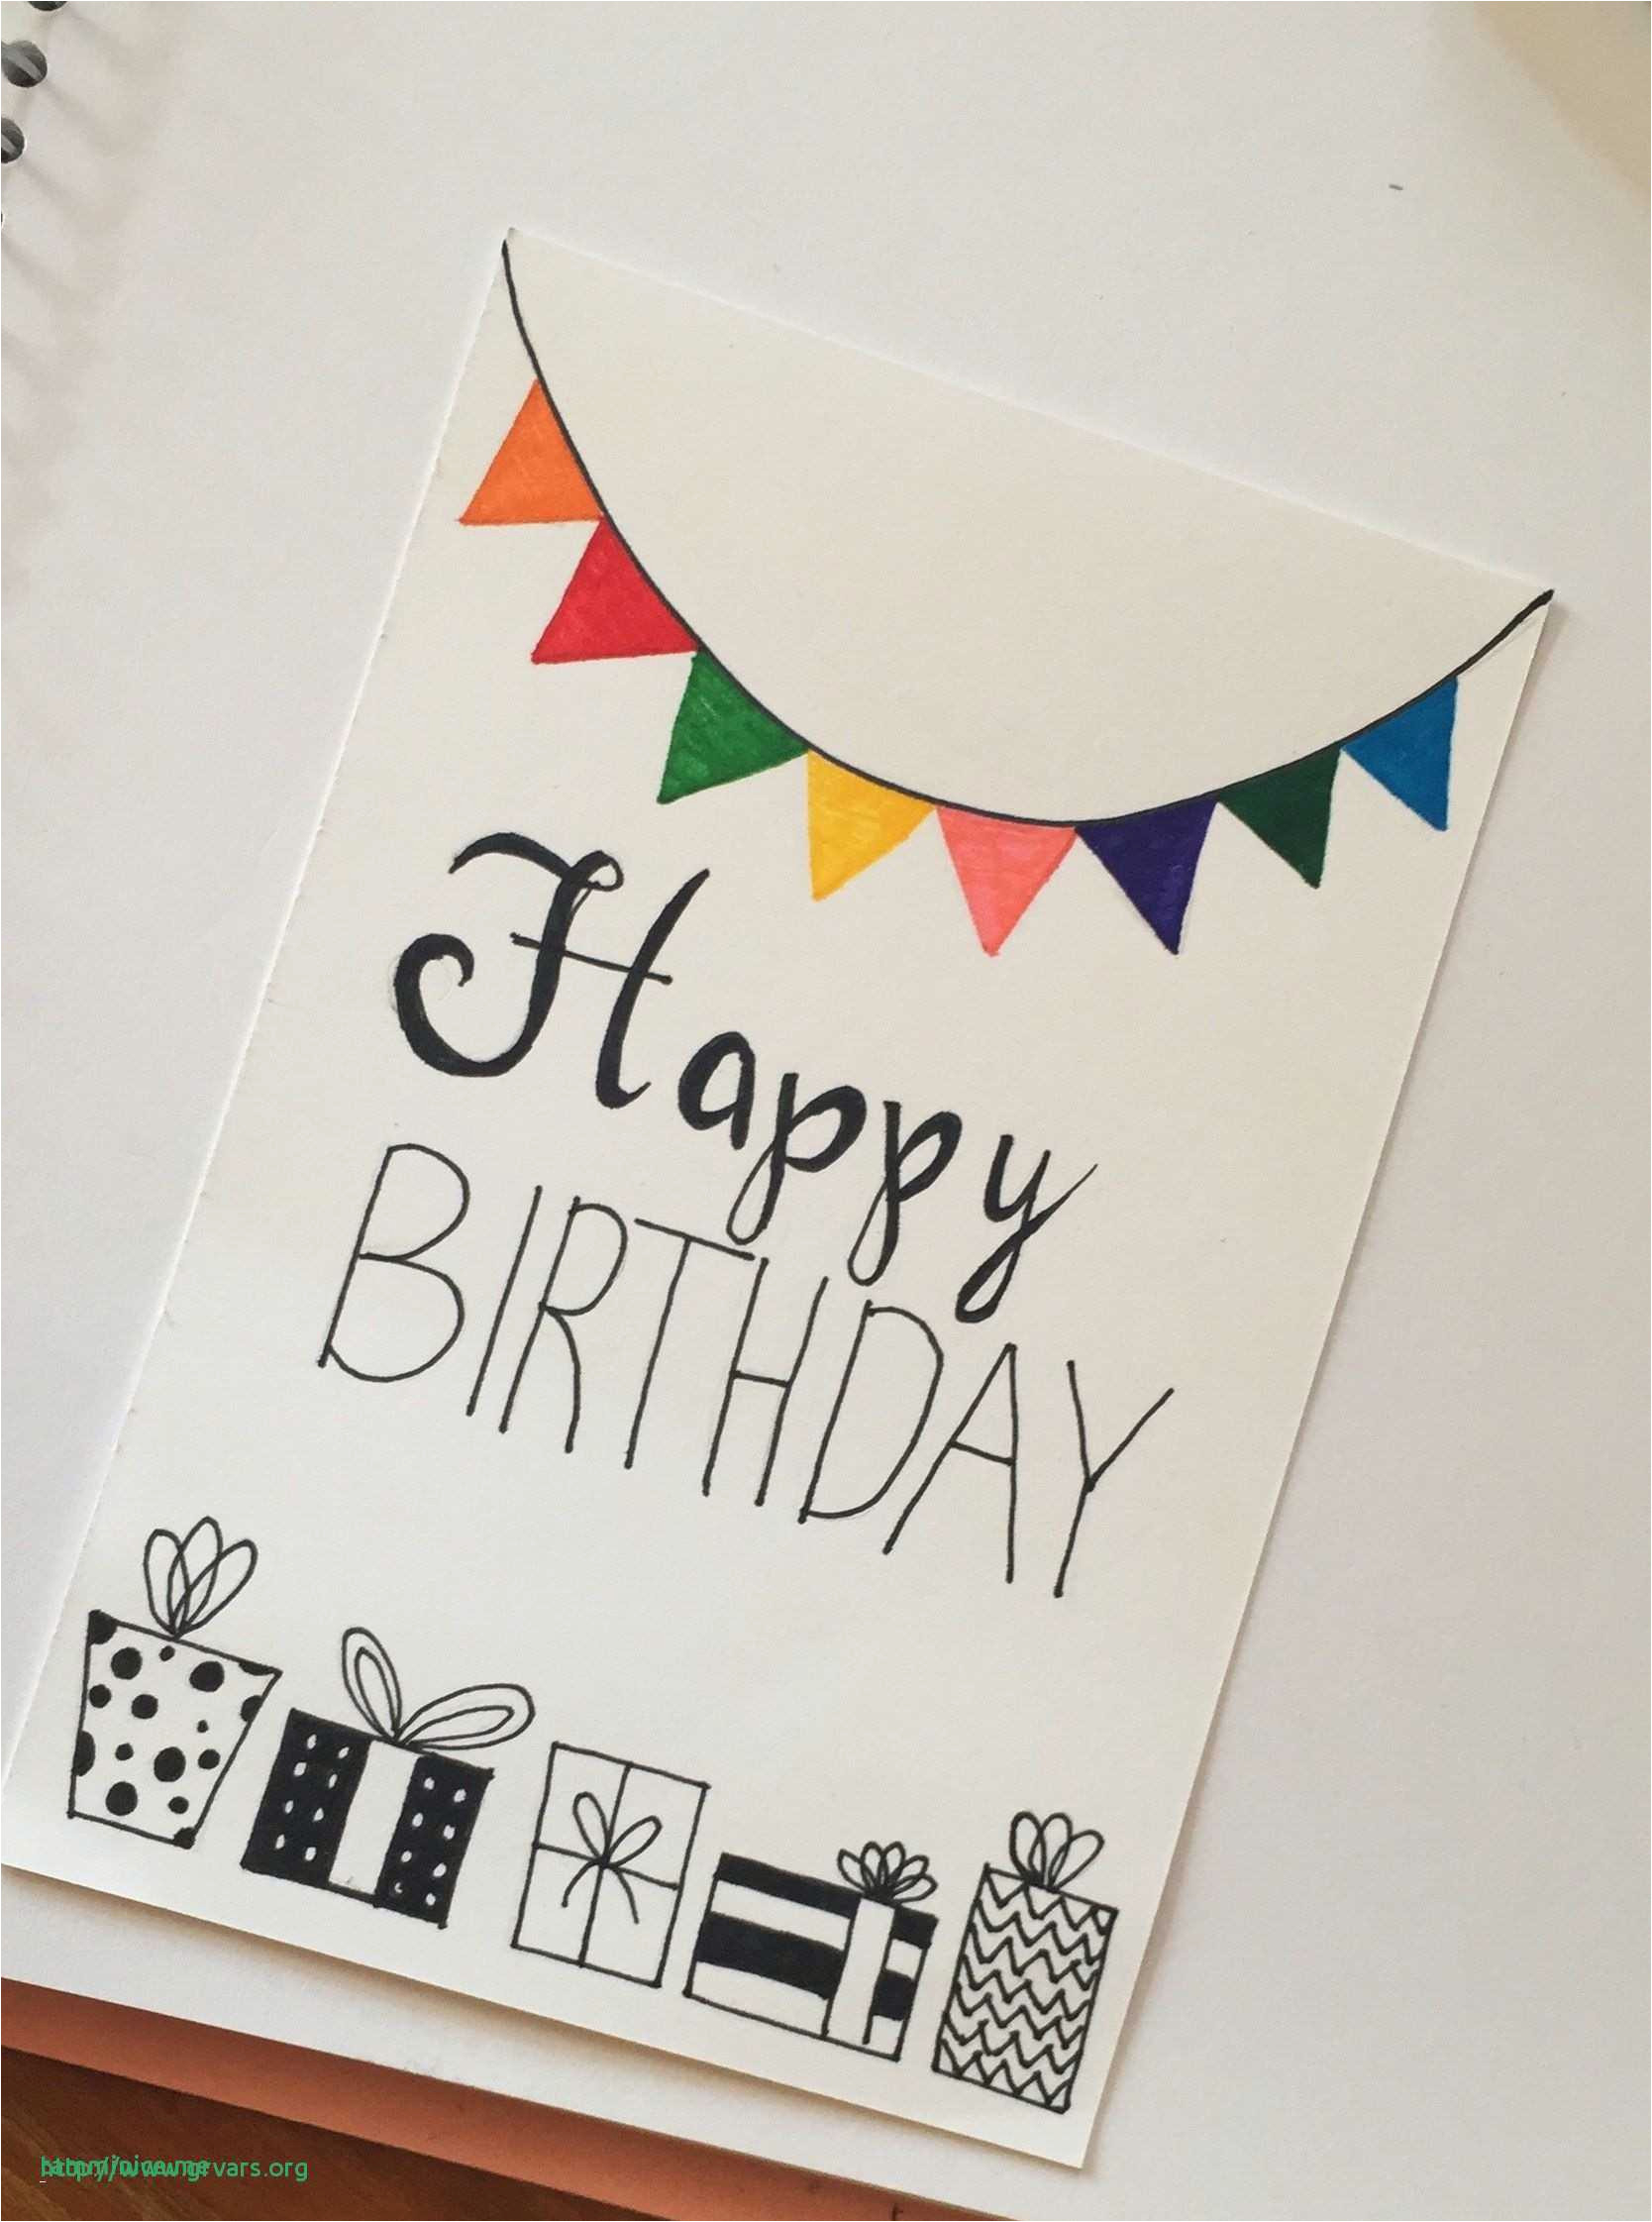 Birthday Card Ideas Handmade Diy Birthday Cards Simple Simple Handmade Birthday Cards Awesome